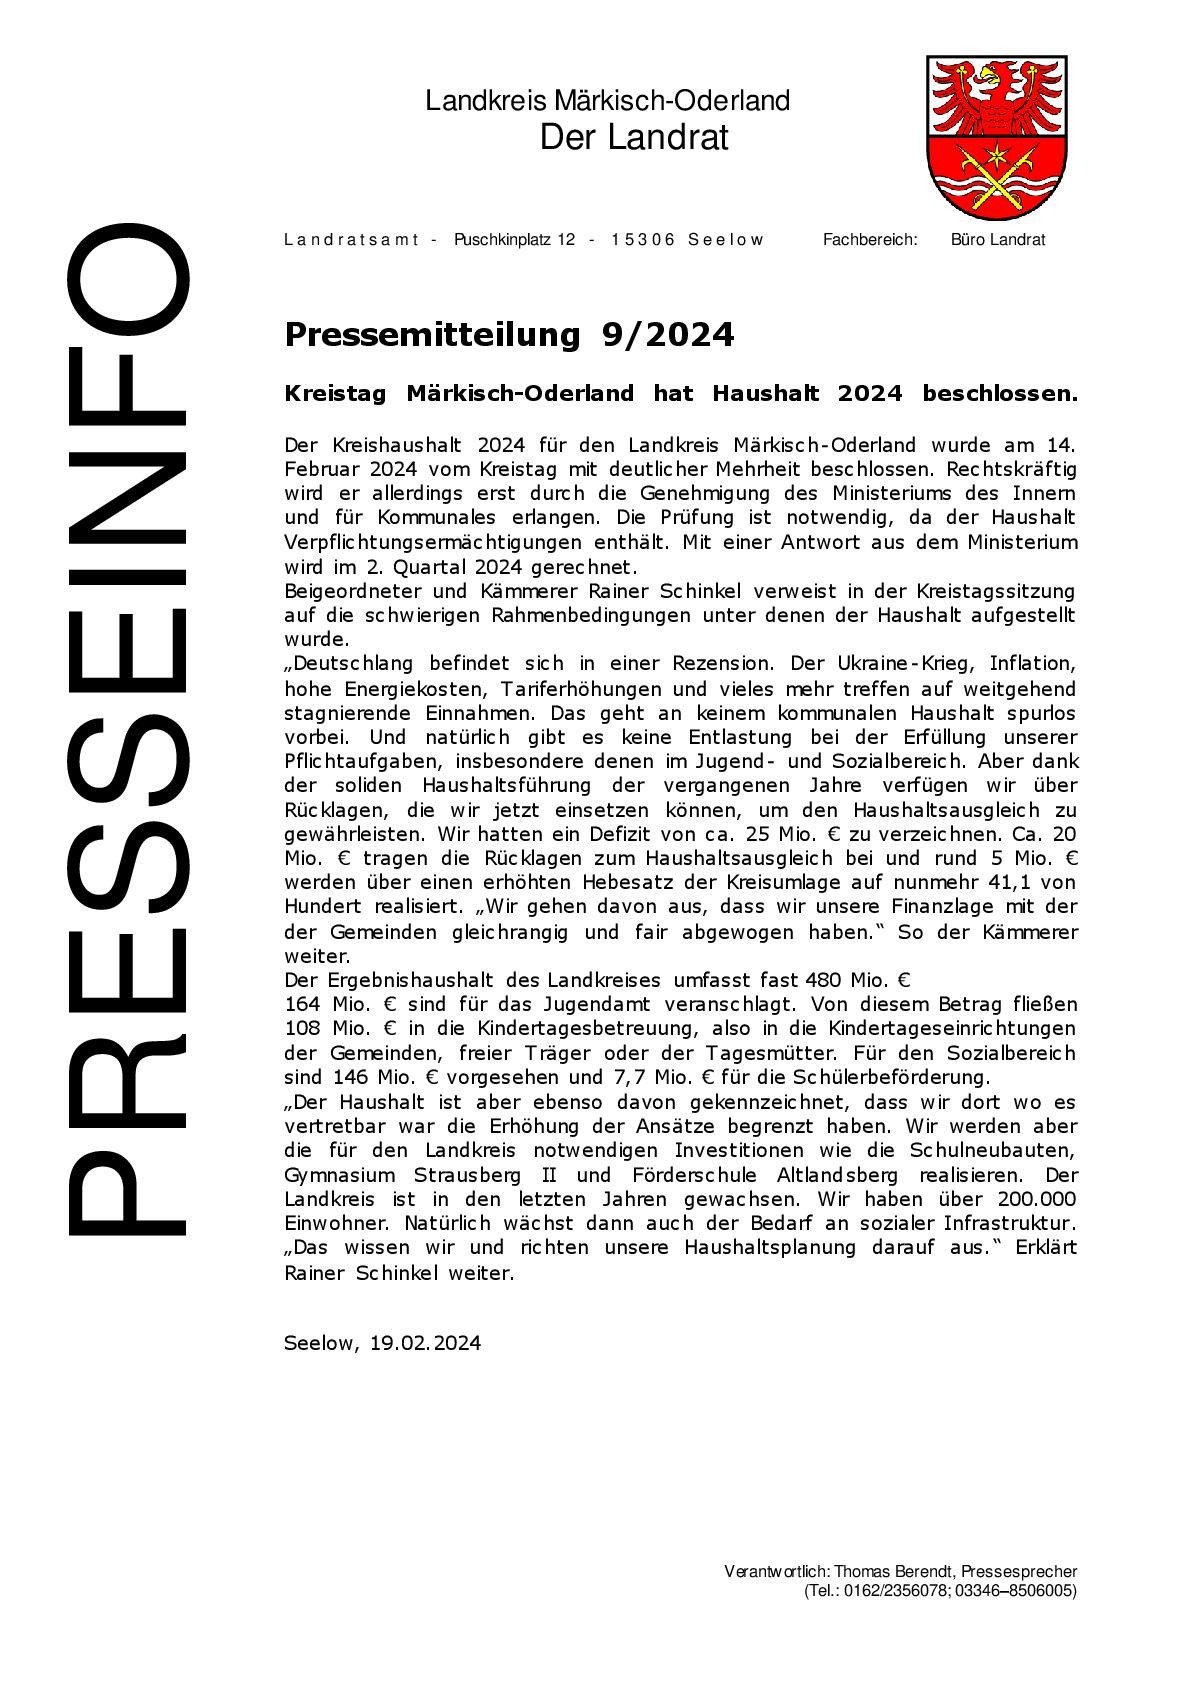 Pressemitteilung -  - 92024 - Kreistag Märkisch-Oderland hat Haushalt 2024 beschlossen. - 19.02.2024-001